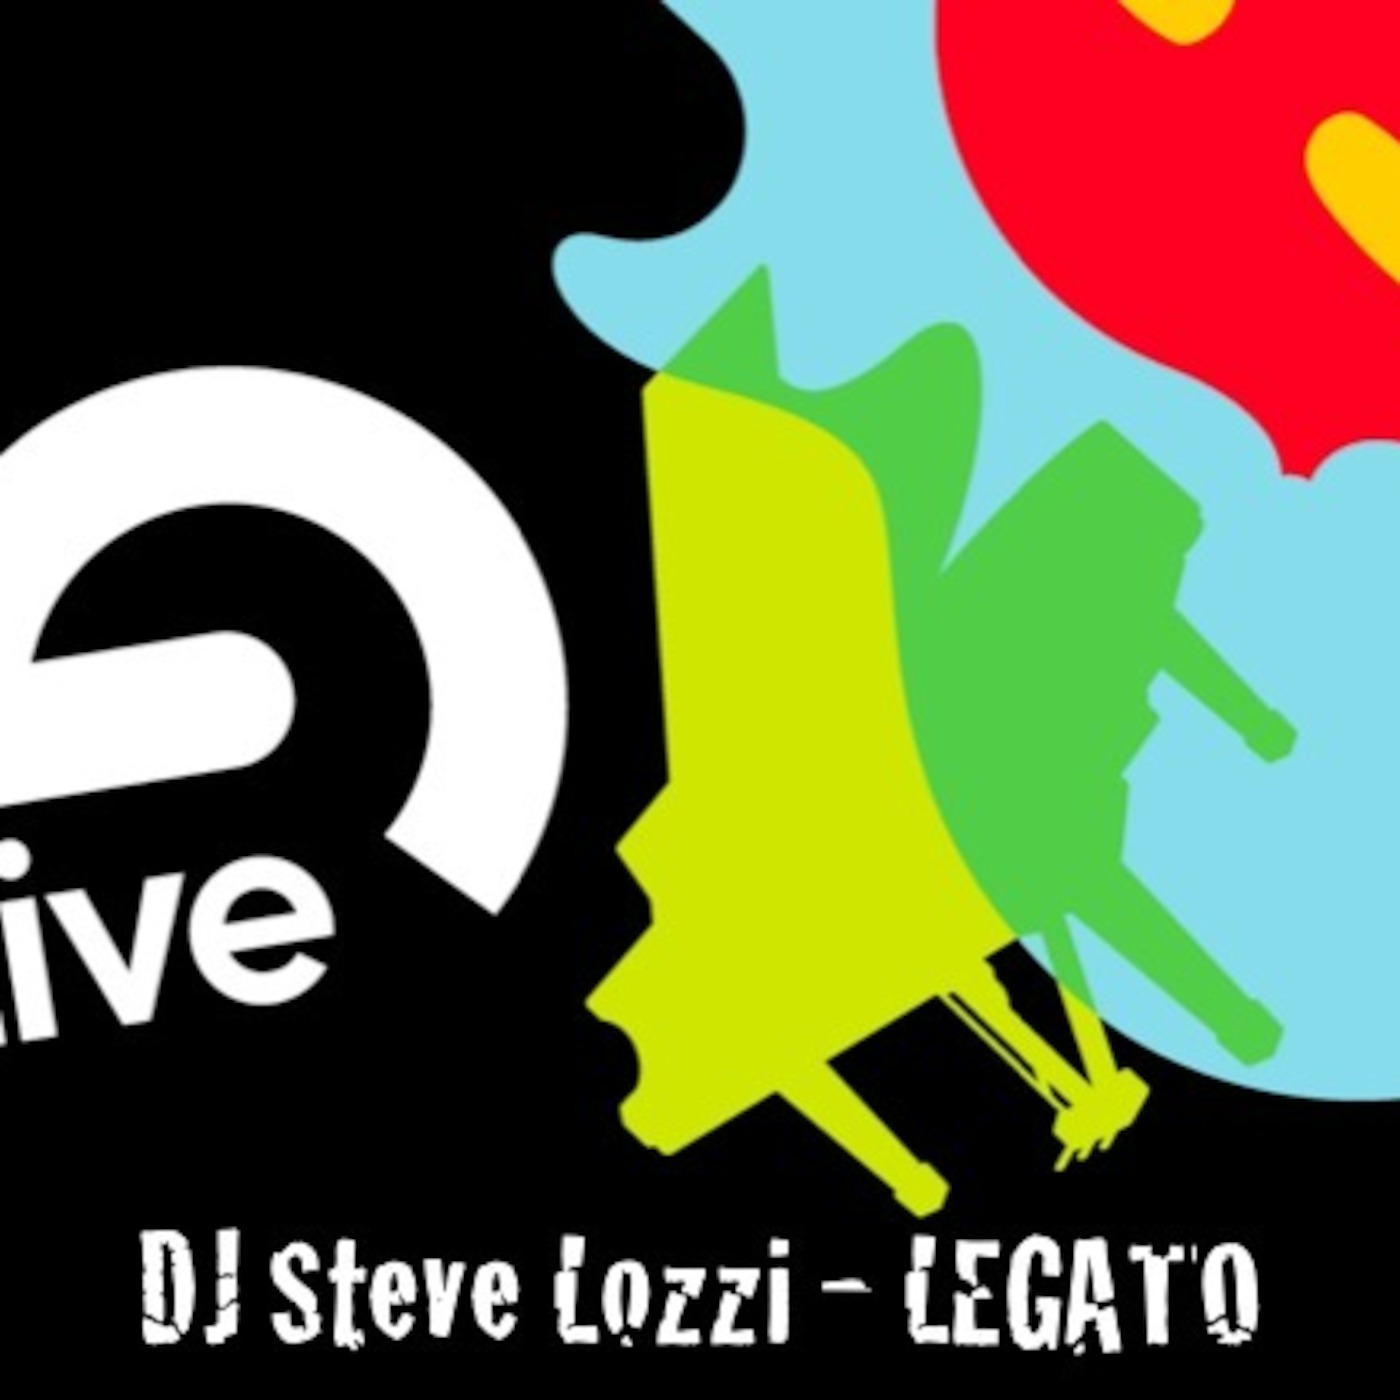 DJ Steve Lozzi - Legato [Edit 2]